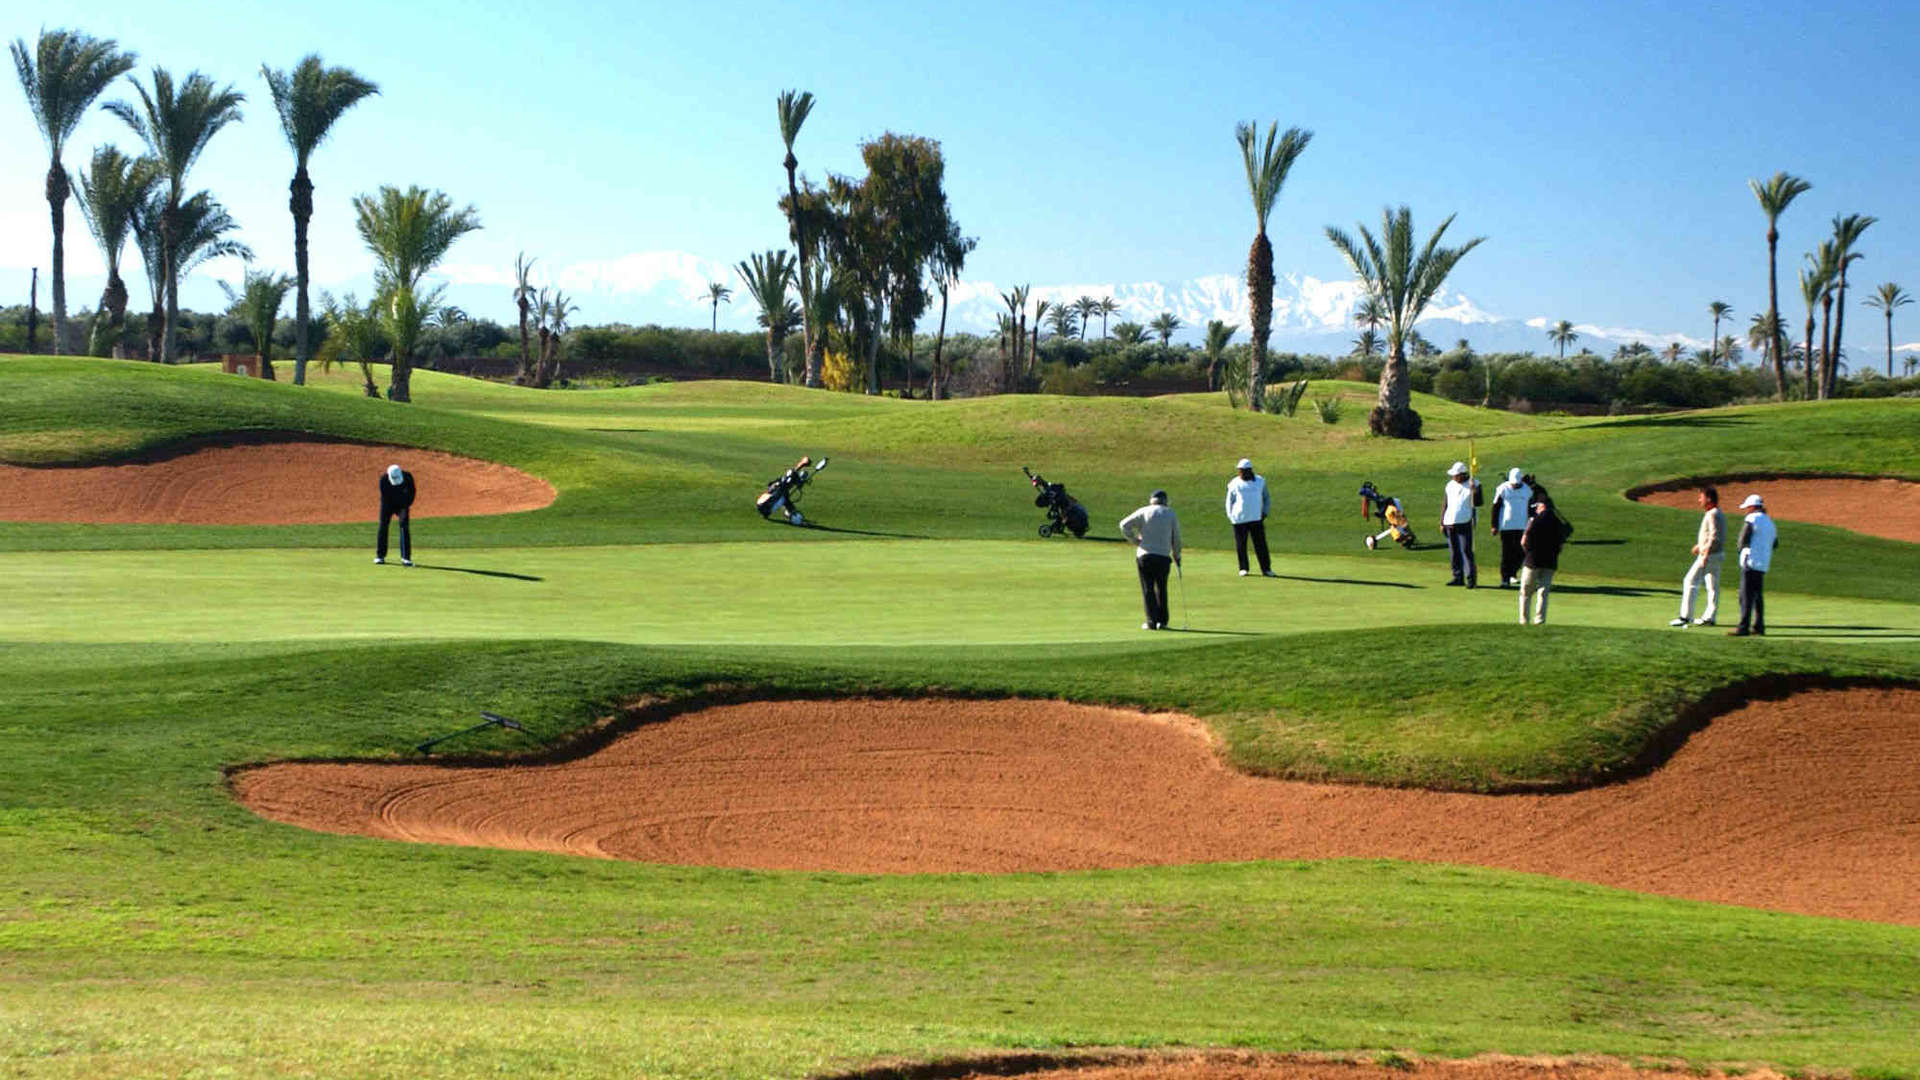 Vente,Villa,Offre de Pré-Vente - Villa de Luxe au Cœur d'un Golf à Marrakech,Marrakech,Amelkis Golf Resort